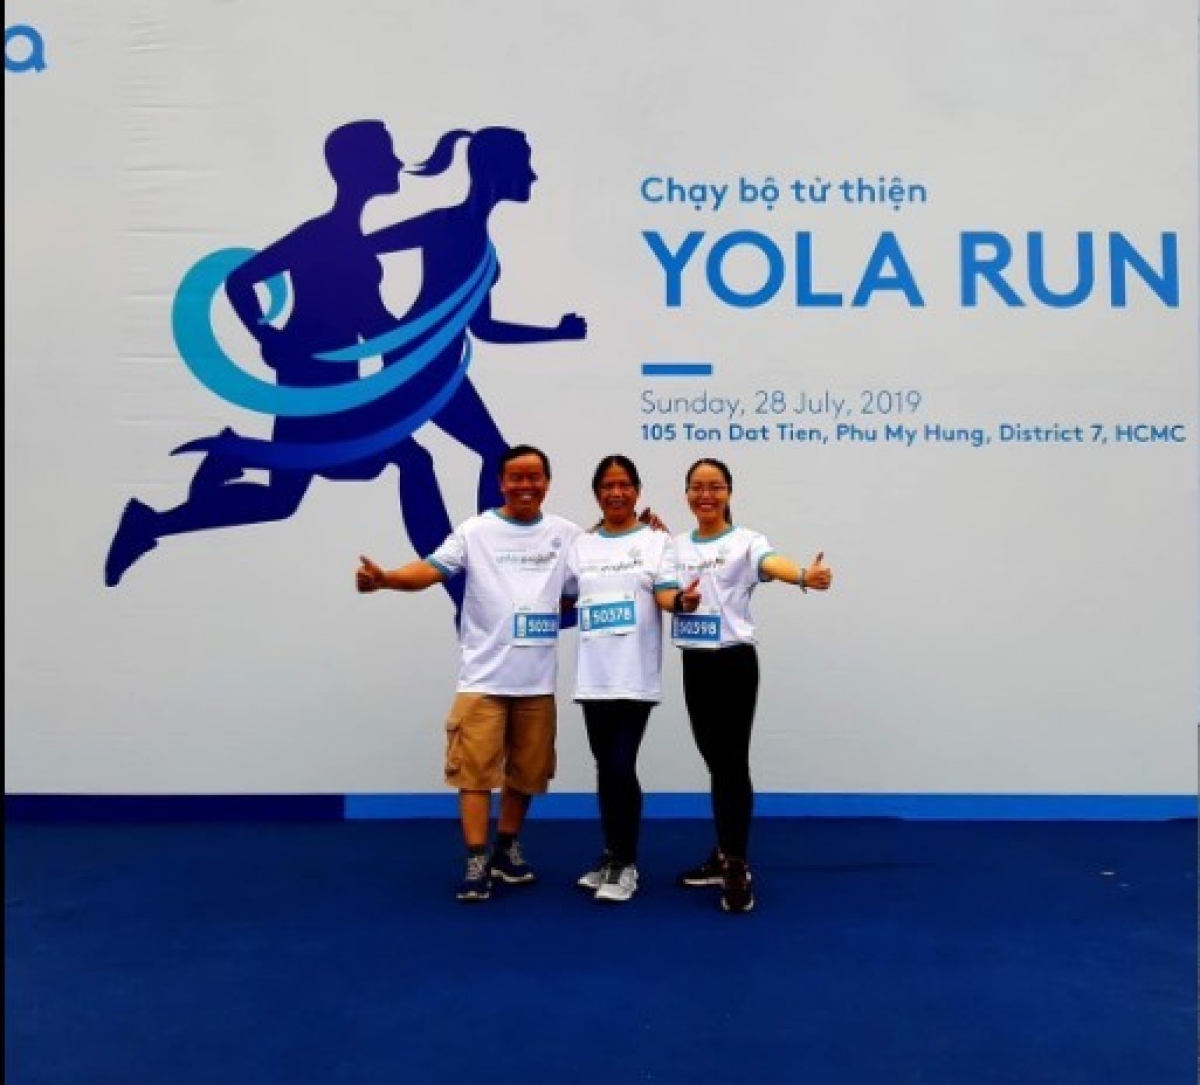 Chị Hương Lan đồng hành cùng bố mẹ tại giải chạy từ thiện Yola Run vào năm 2019. Ảnh: NVCC